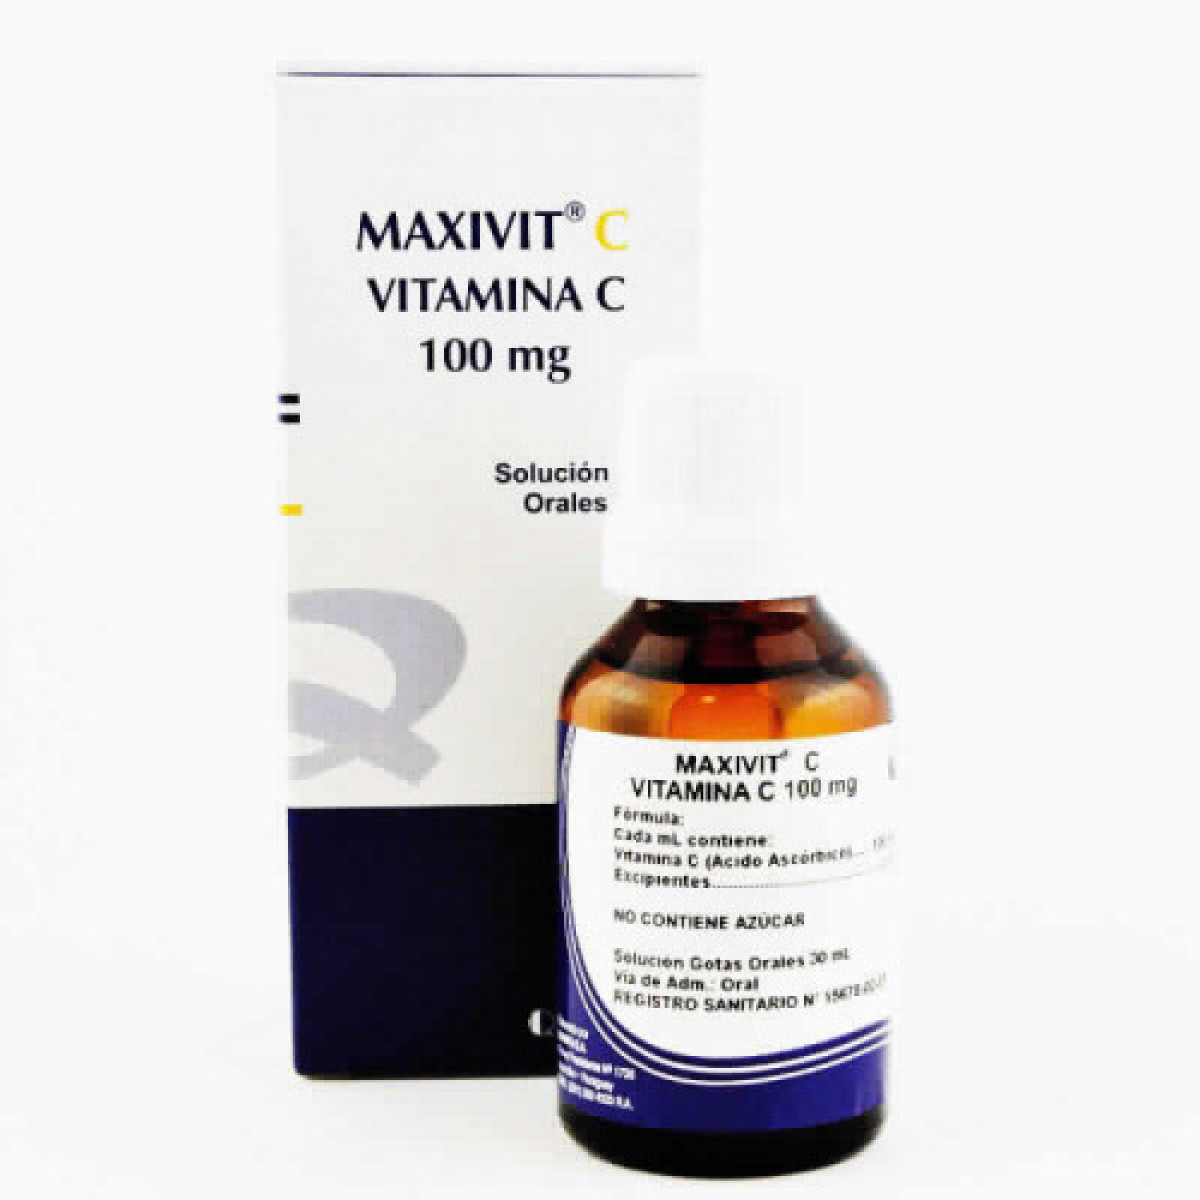 MAXIVIT C GTS ORAL X 30 ML